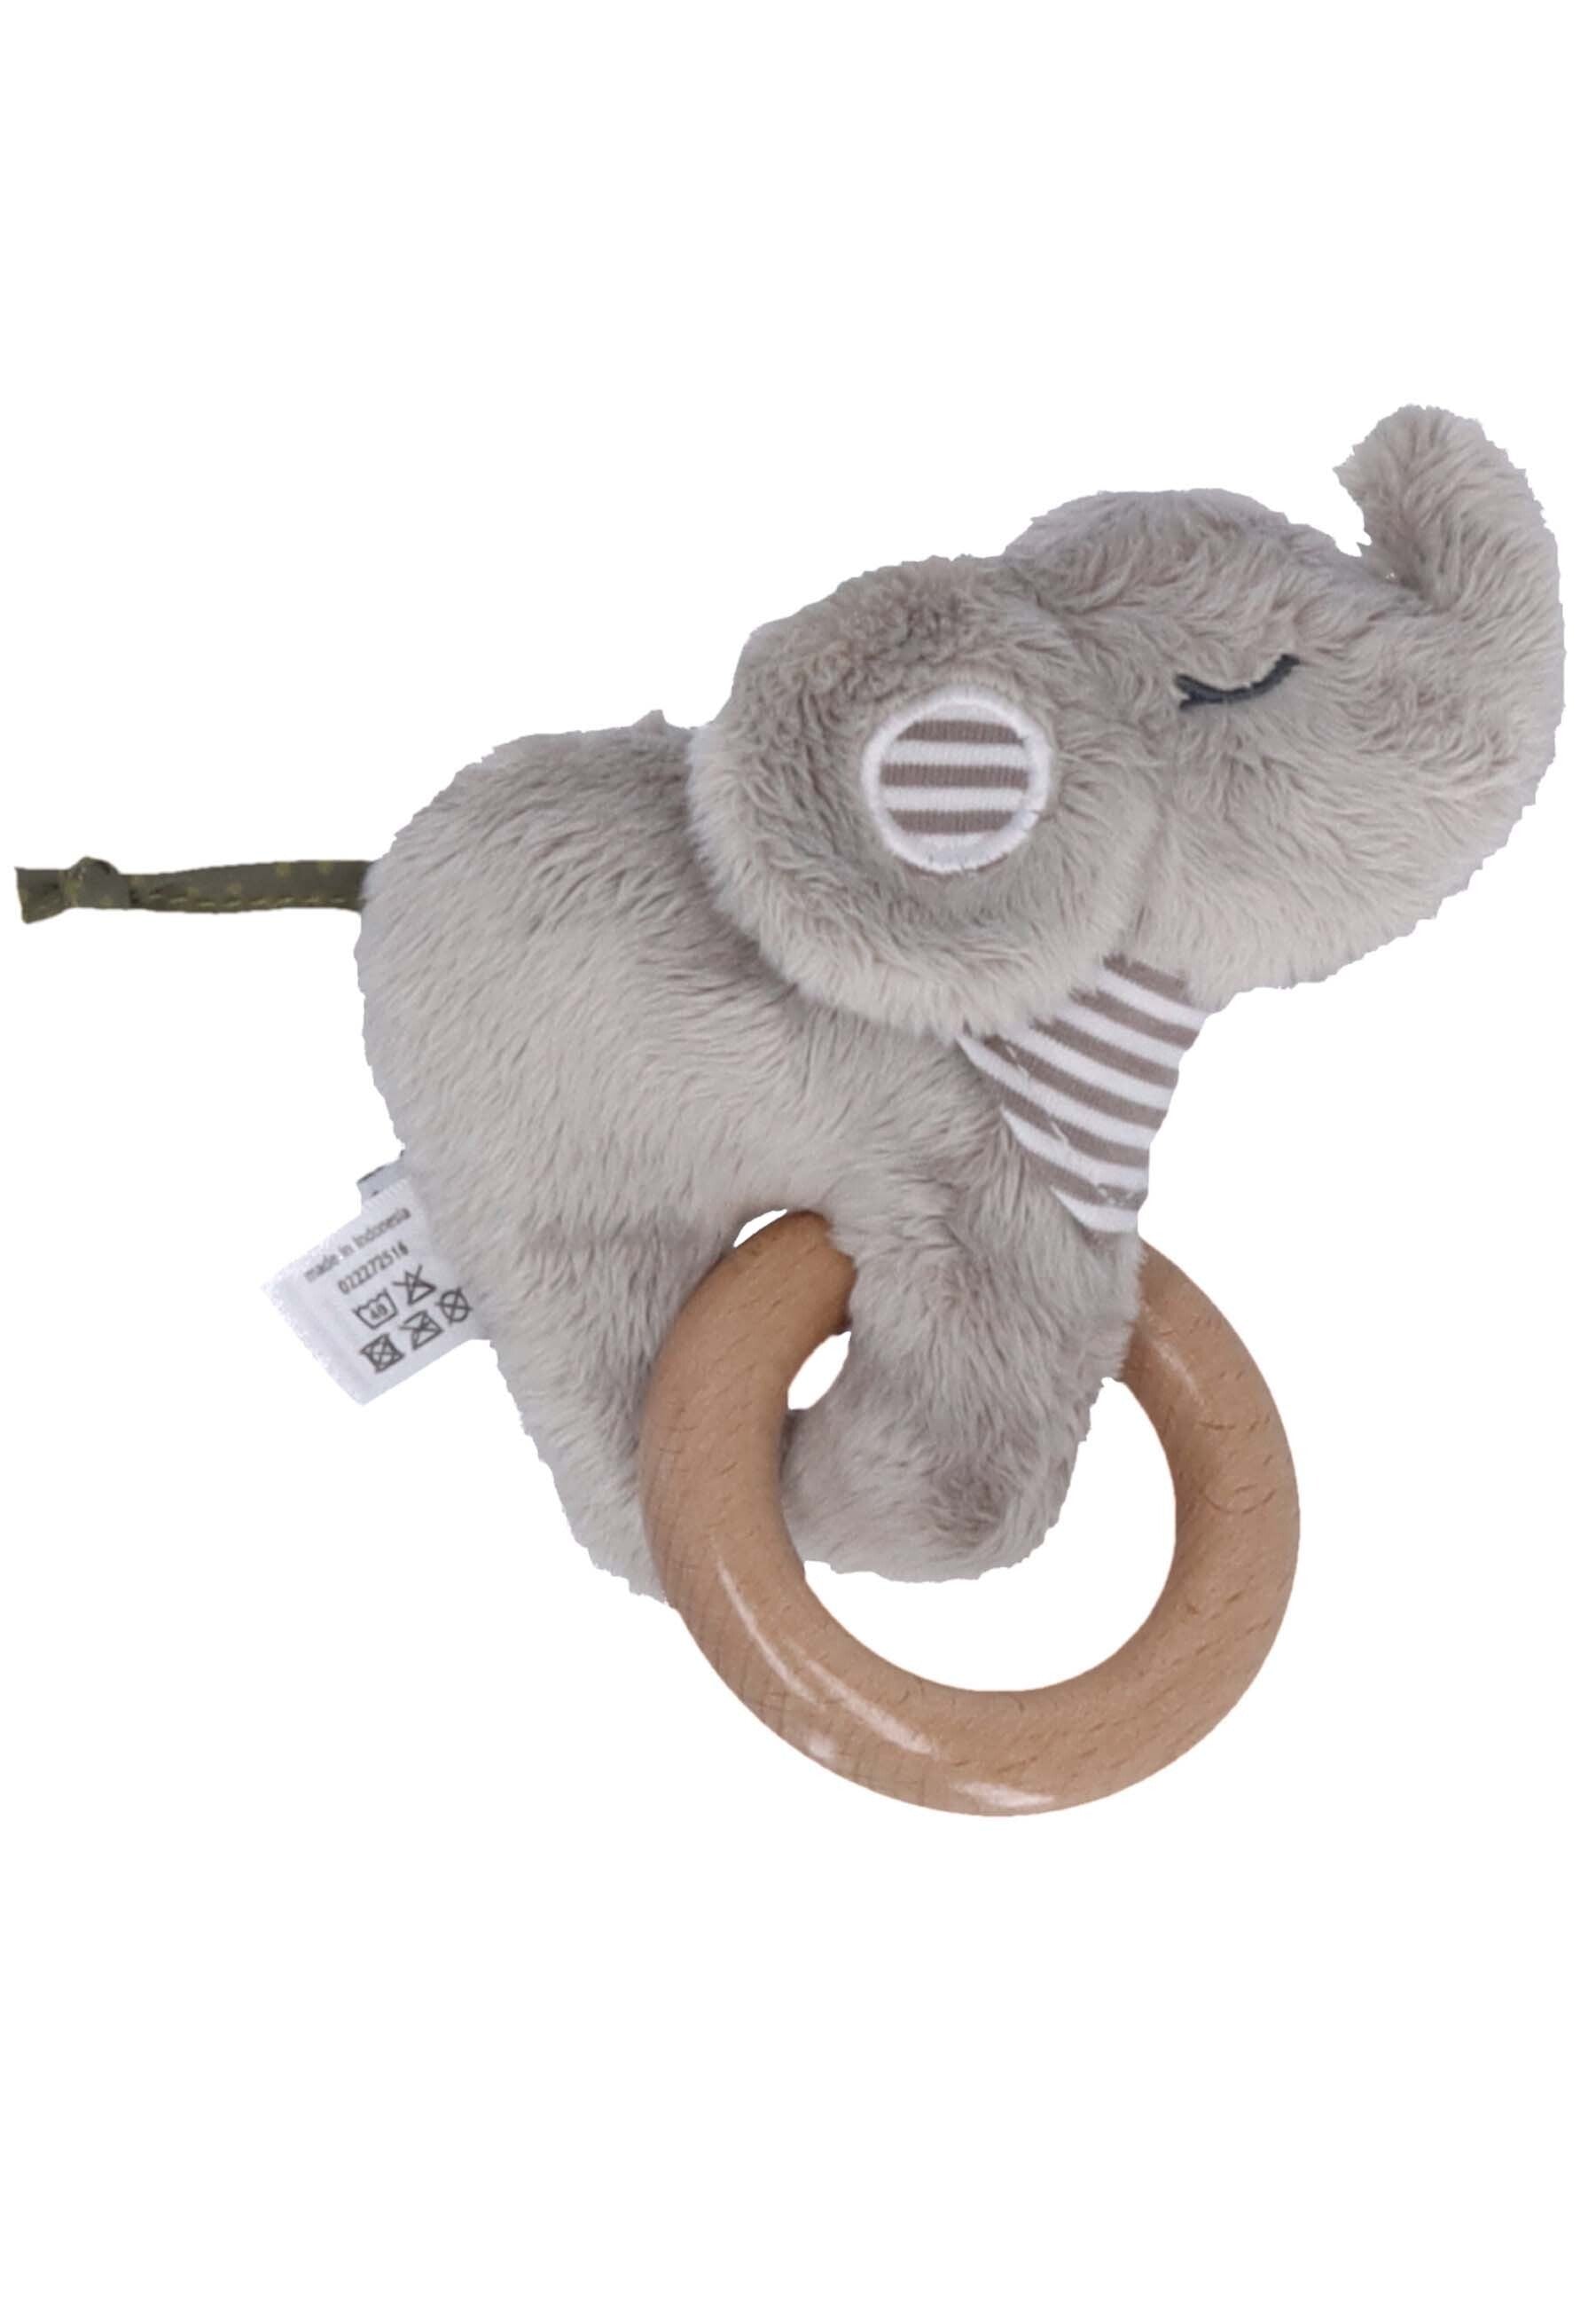 Spielfigur mit Holz Greifring Elefant Eddy, ⭐️ Grau